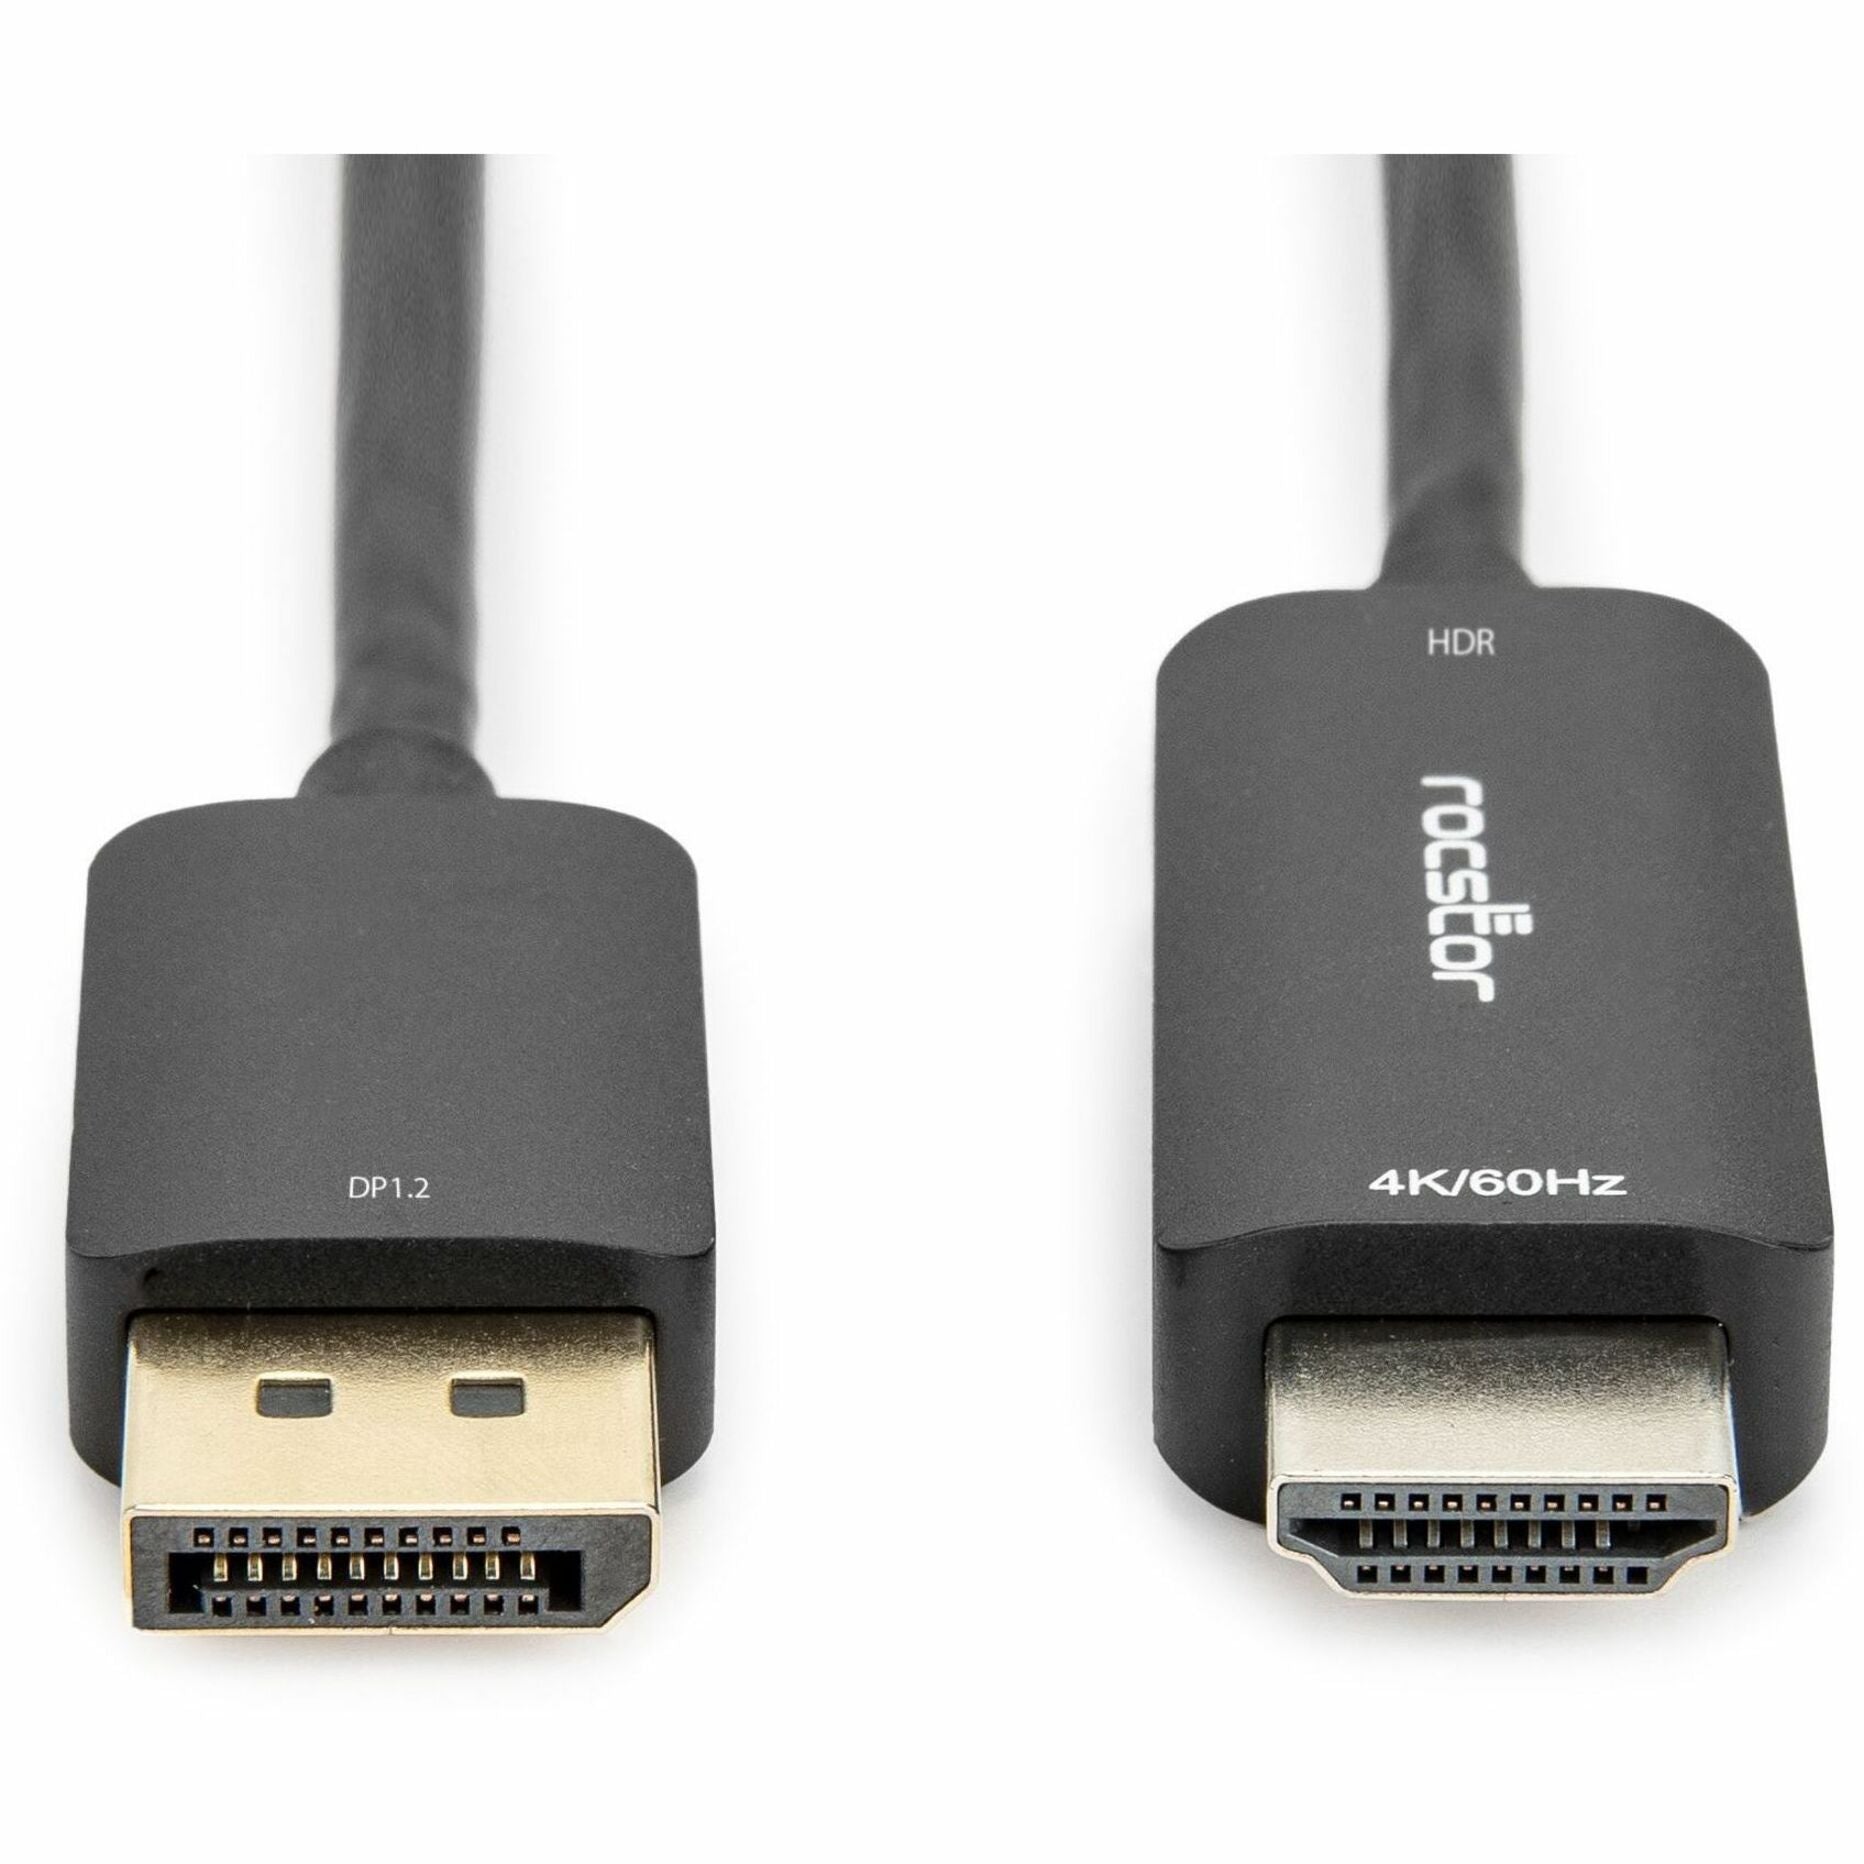 Rocstor Y10C127-B2 DisplayPort/HDMI Audio/Video Kabel 6 ft Vergoldete Stecker 4K Unterstützt